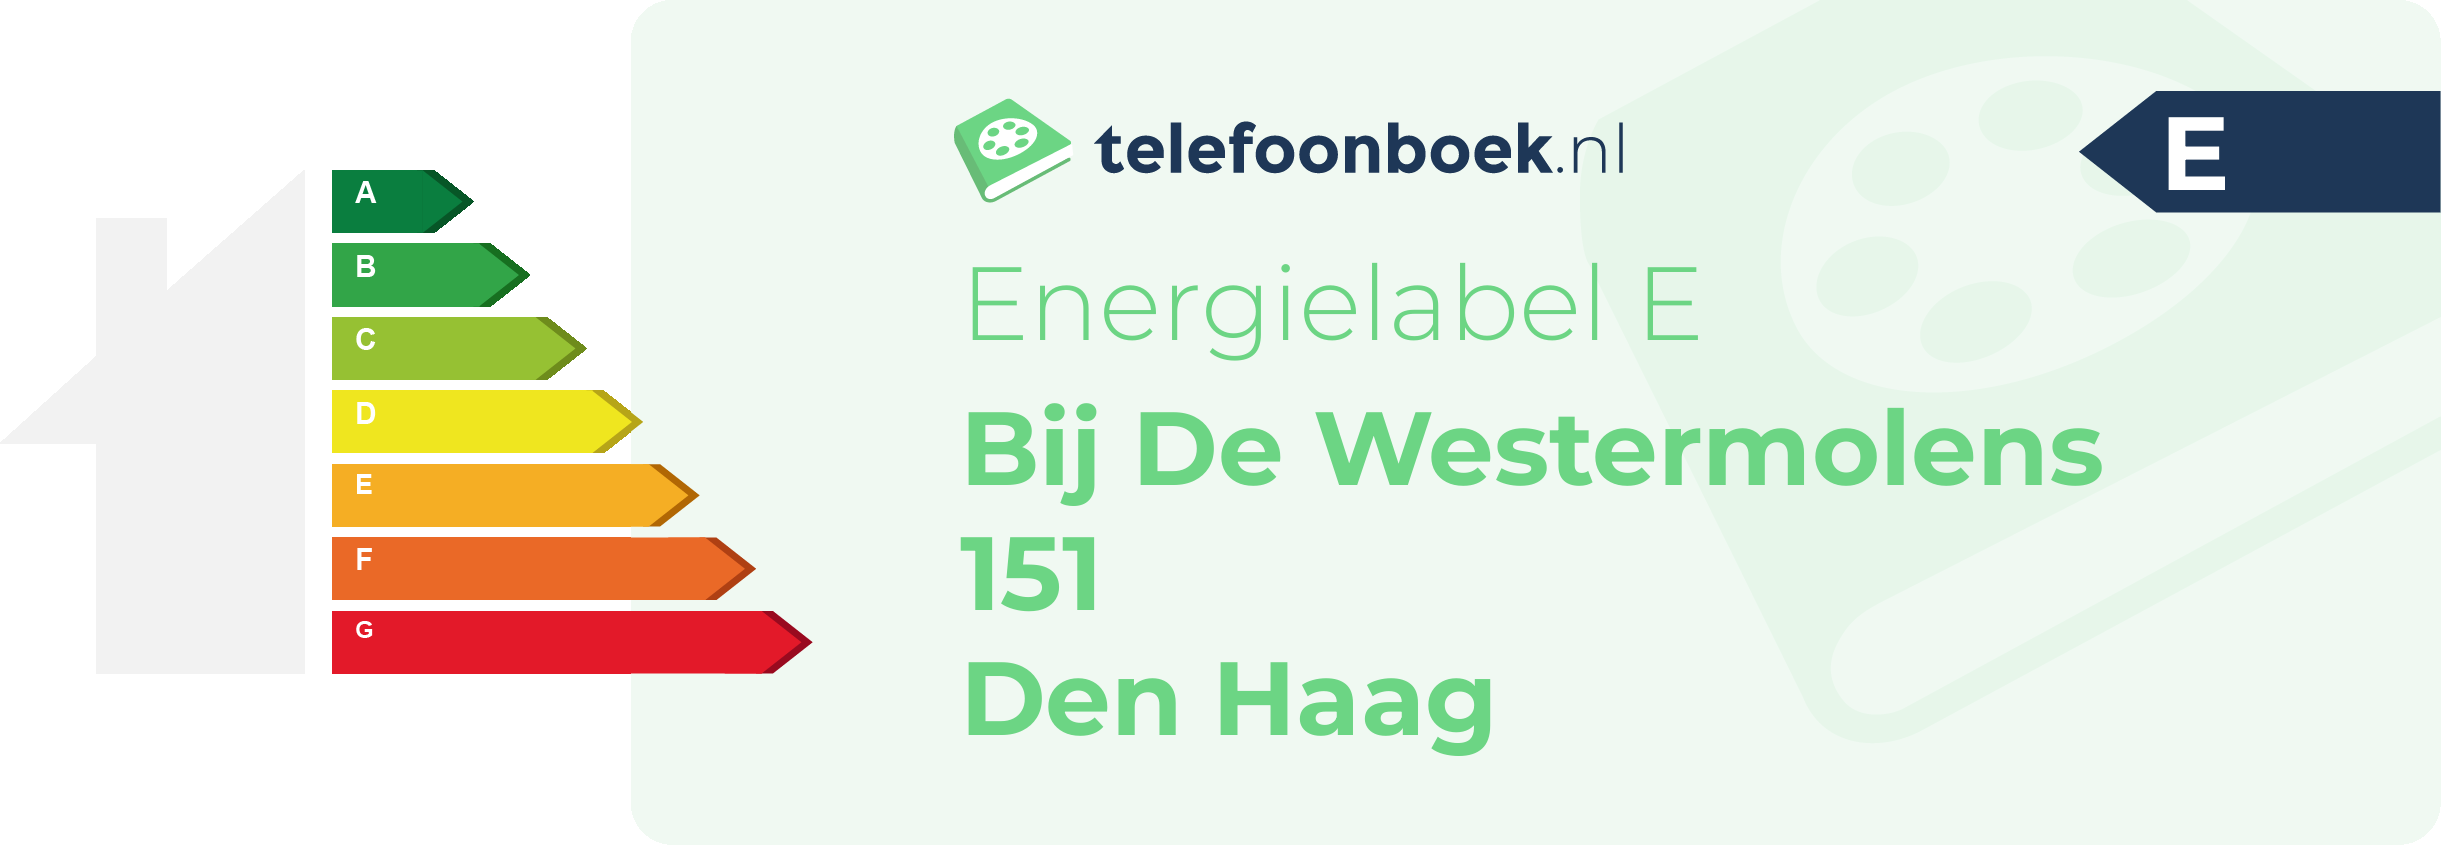 Energielabel Bij De Westermolens 151 Den Haag